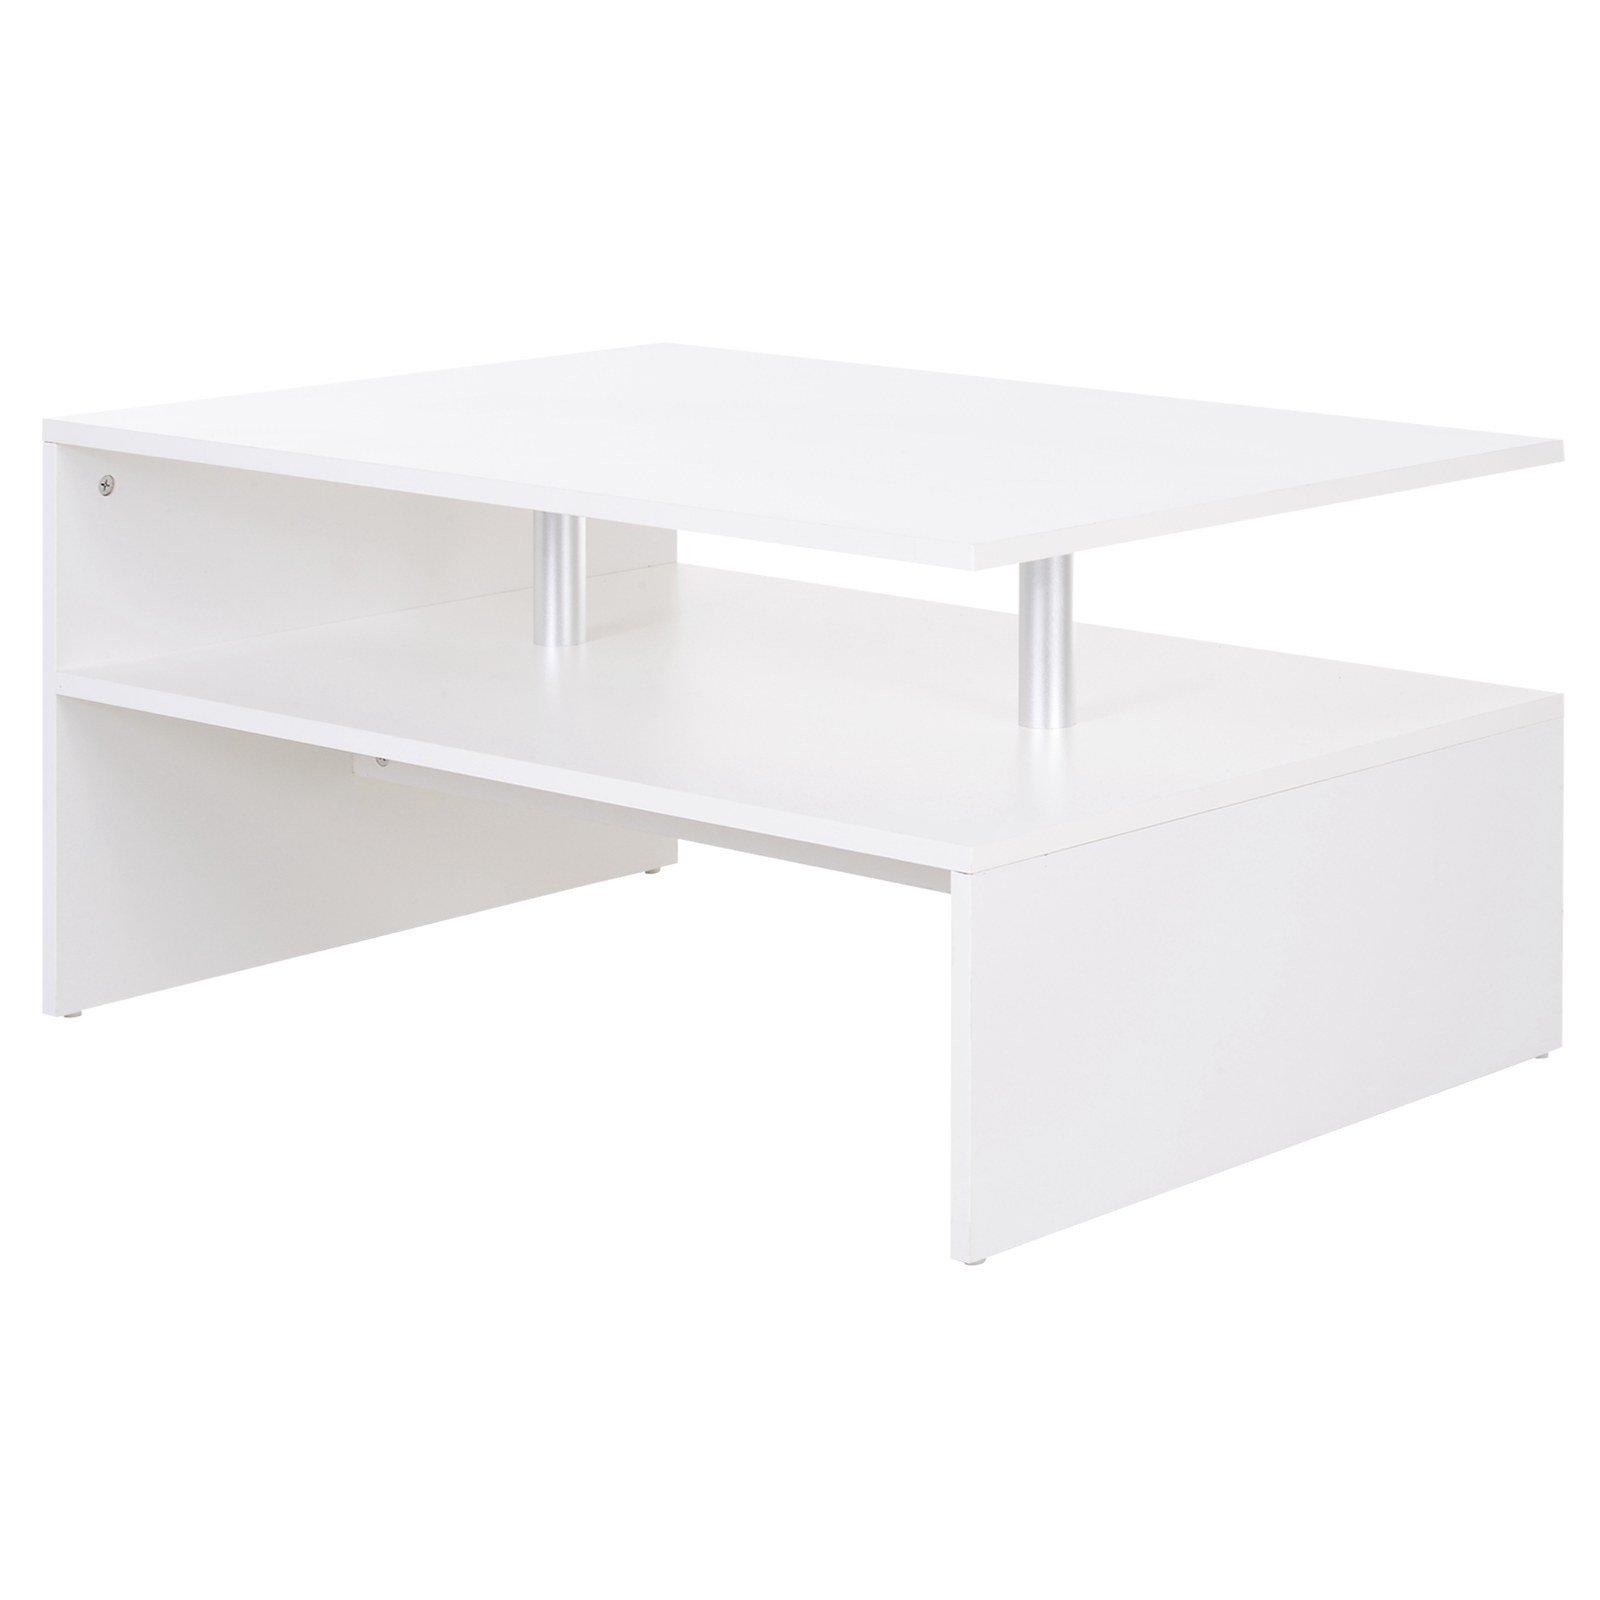 2 Tier Coffee Table End/Side Table Modern Design  Open Shelf